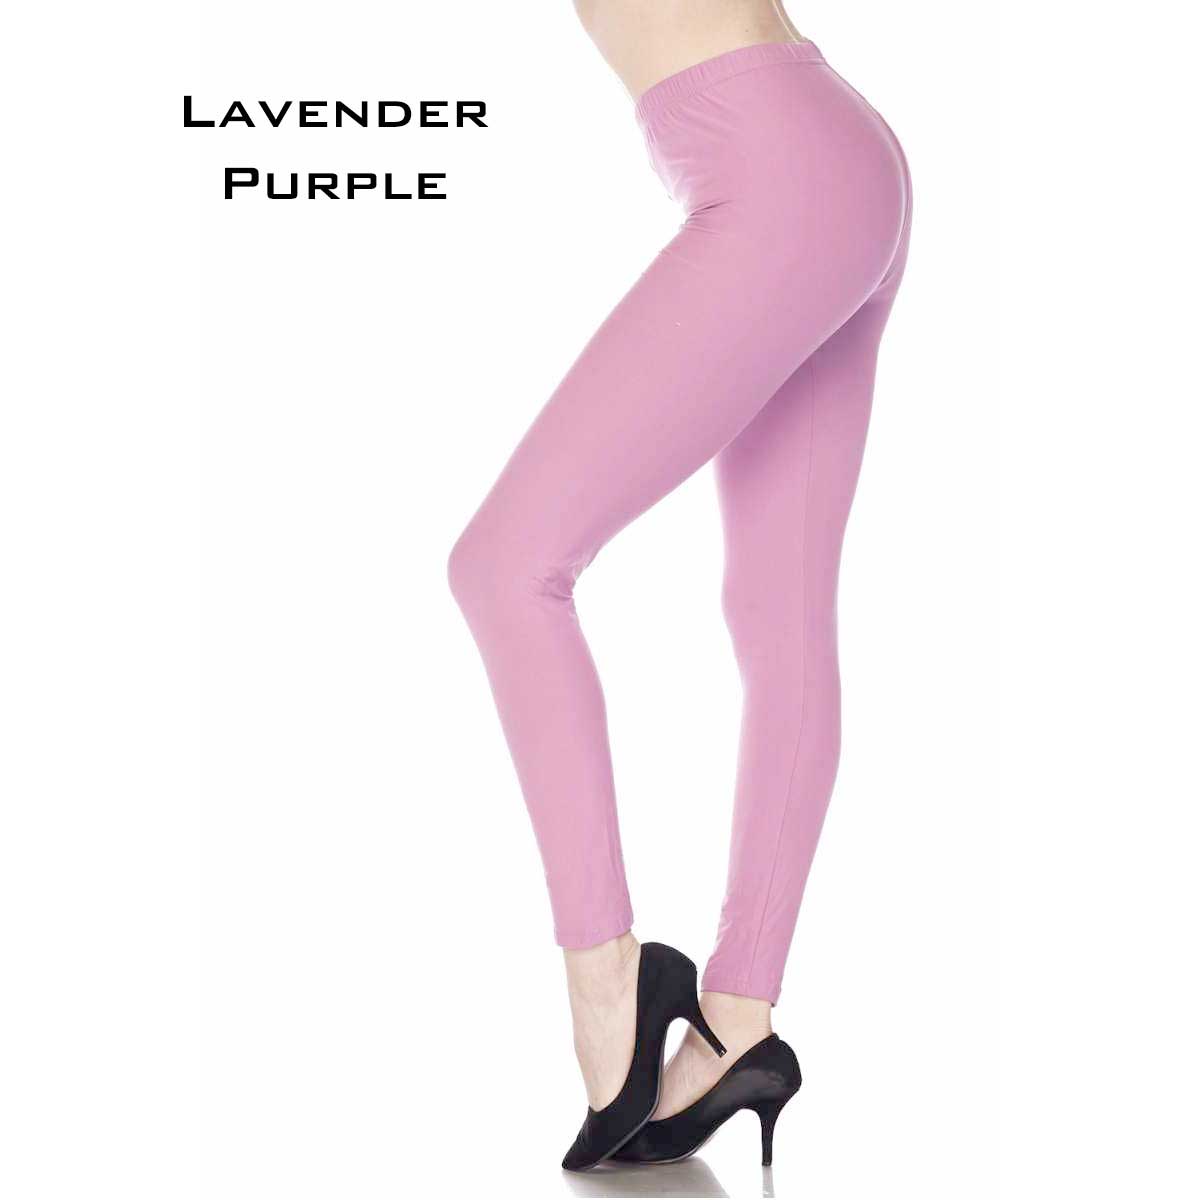 Lavender Purple Brushed Fiber Leggings - Ankle Length Solids